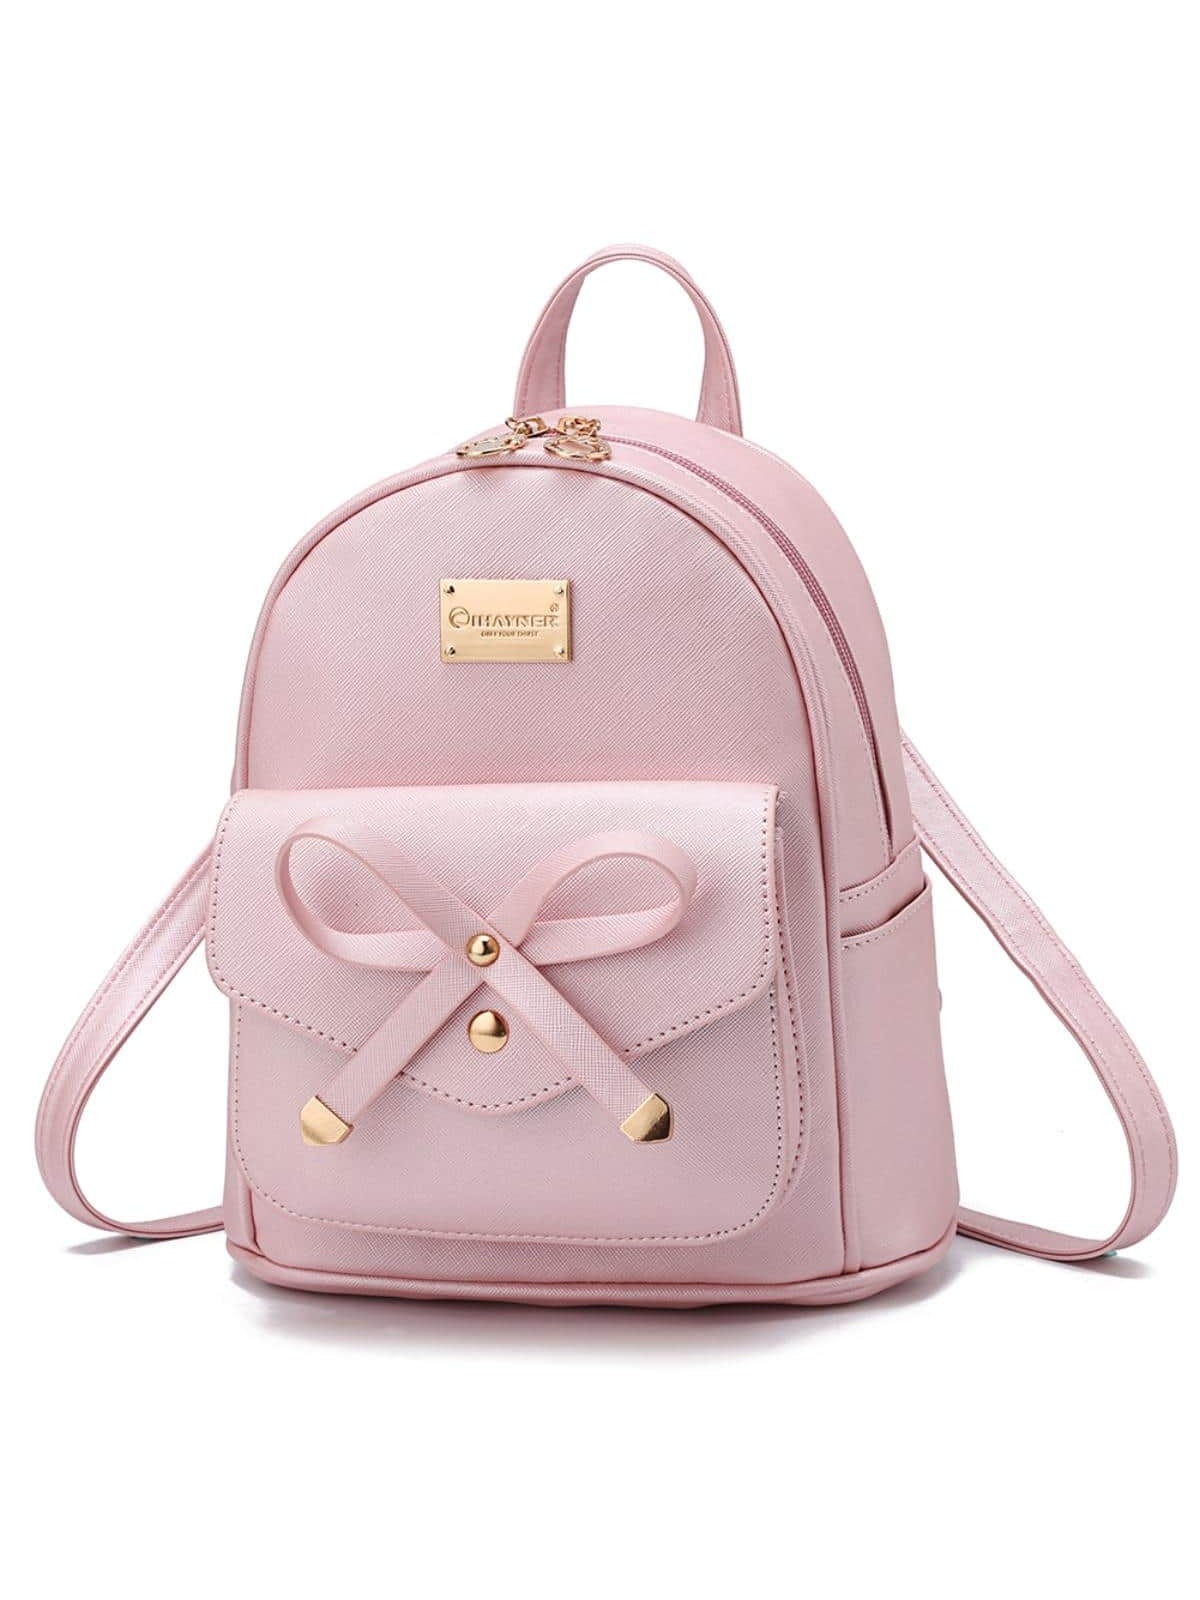 I IHAYNER, розовое золото женский рюкзак с мини принтом для маникюра женский школьный рюкзак рюкзак для девочек детский школьный рюкзак рюкзак